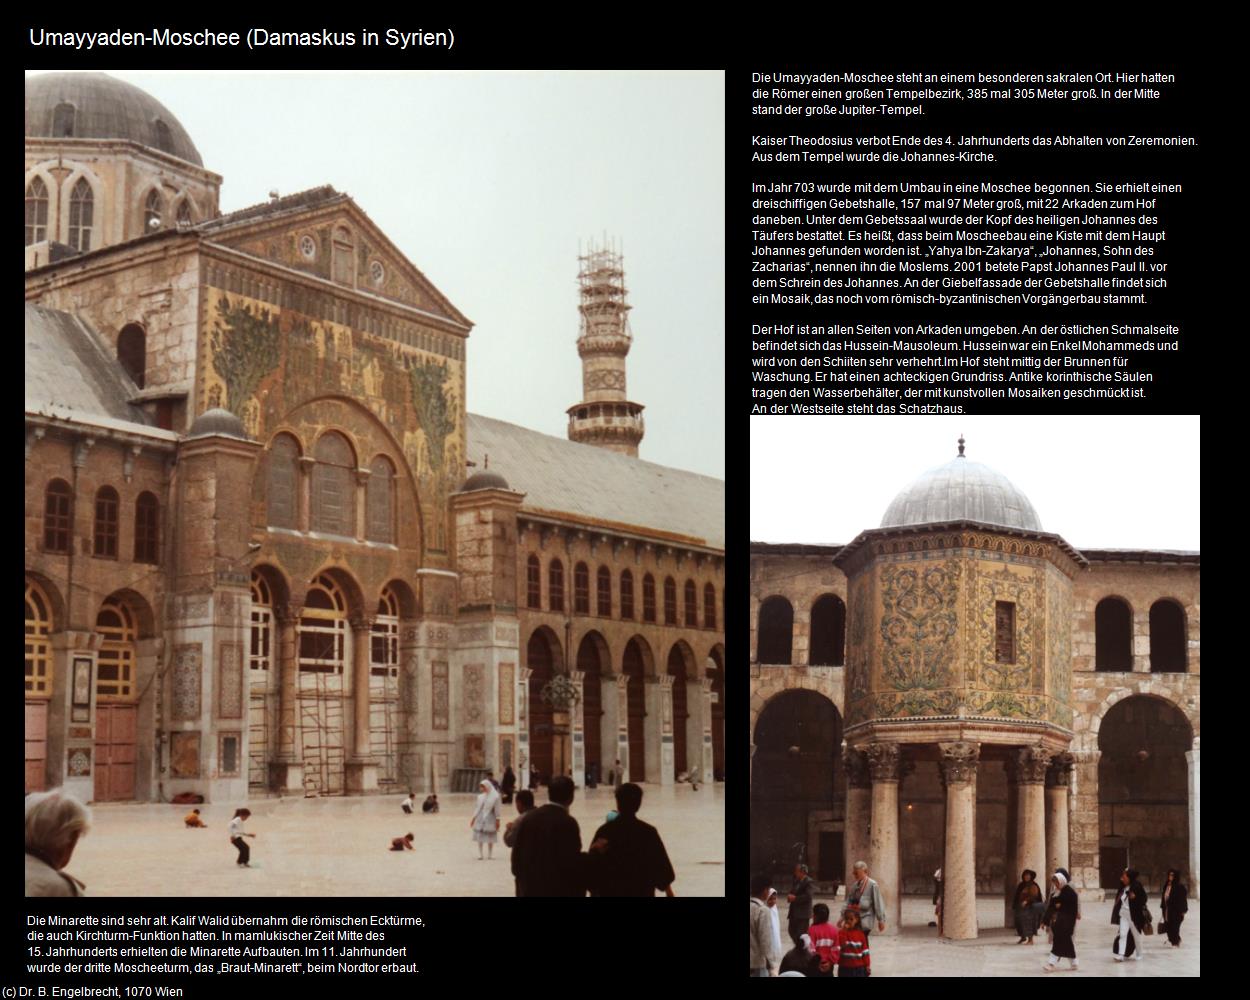 Umayyaden-Moschee (Damaskus (SYR)) in Kulturatlas-JORDANIEN-SYRIEN-LIBANON